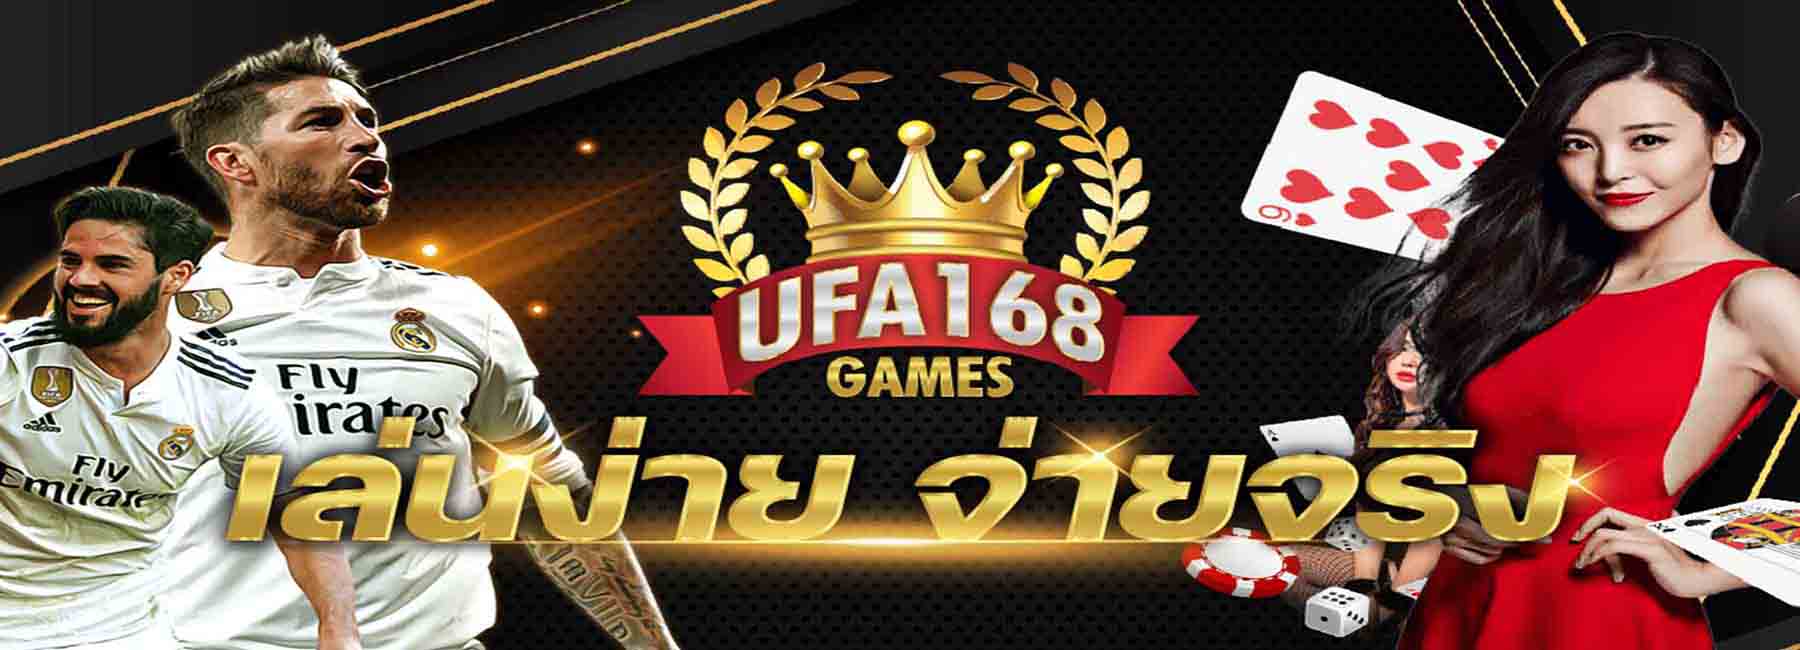 UFABETS ufa168games-ufabets-ufa-01